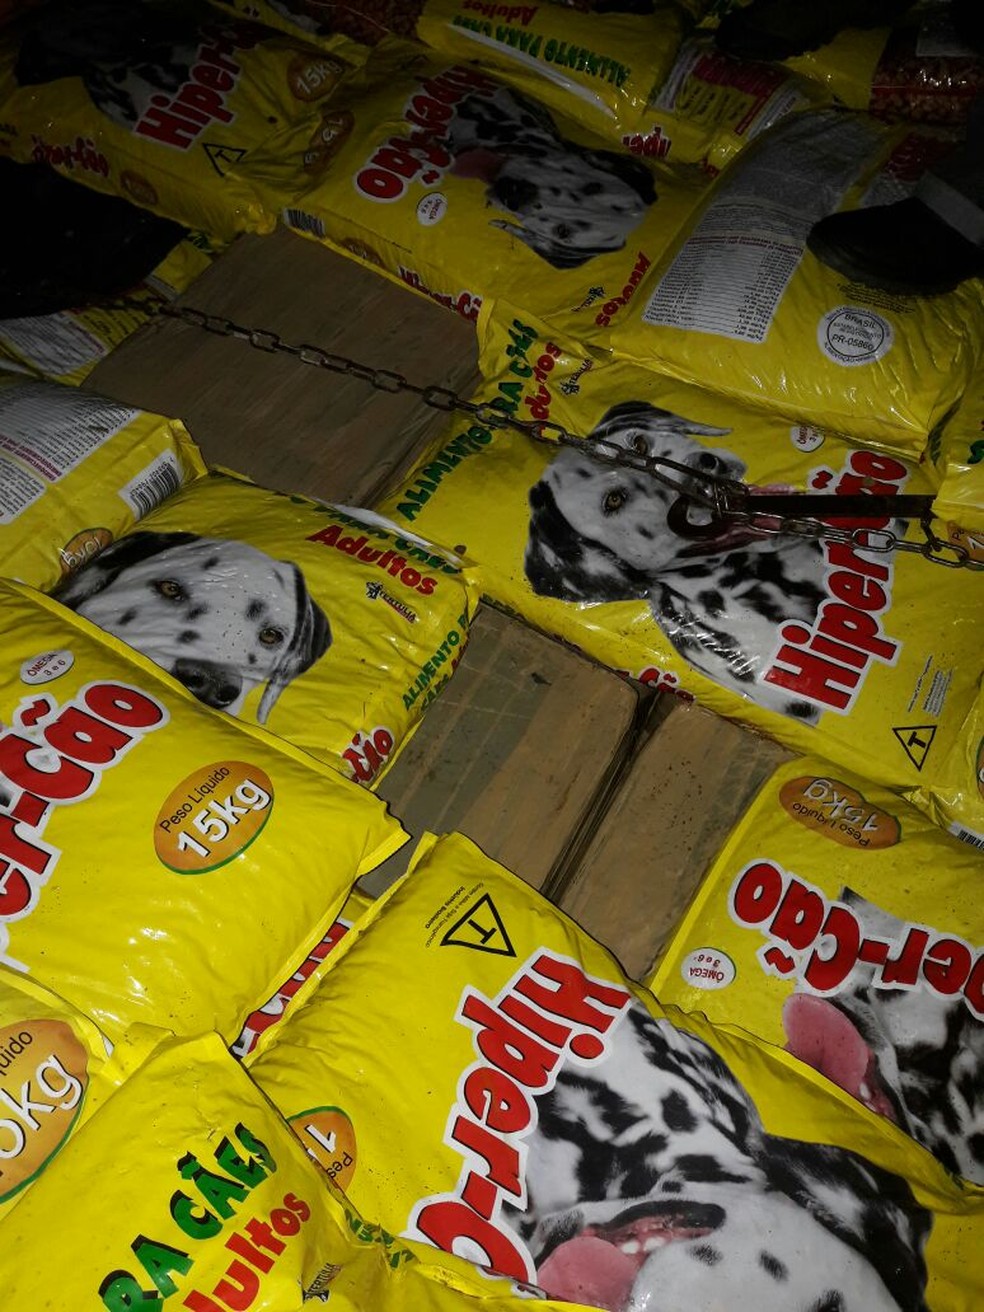 Caixas com maconha estava escondidas em meio aos sacos de ração para cachorro (Foto: PF/Divulgação)